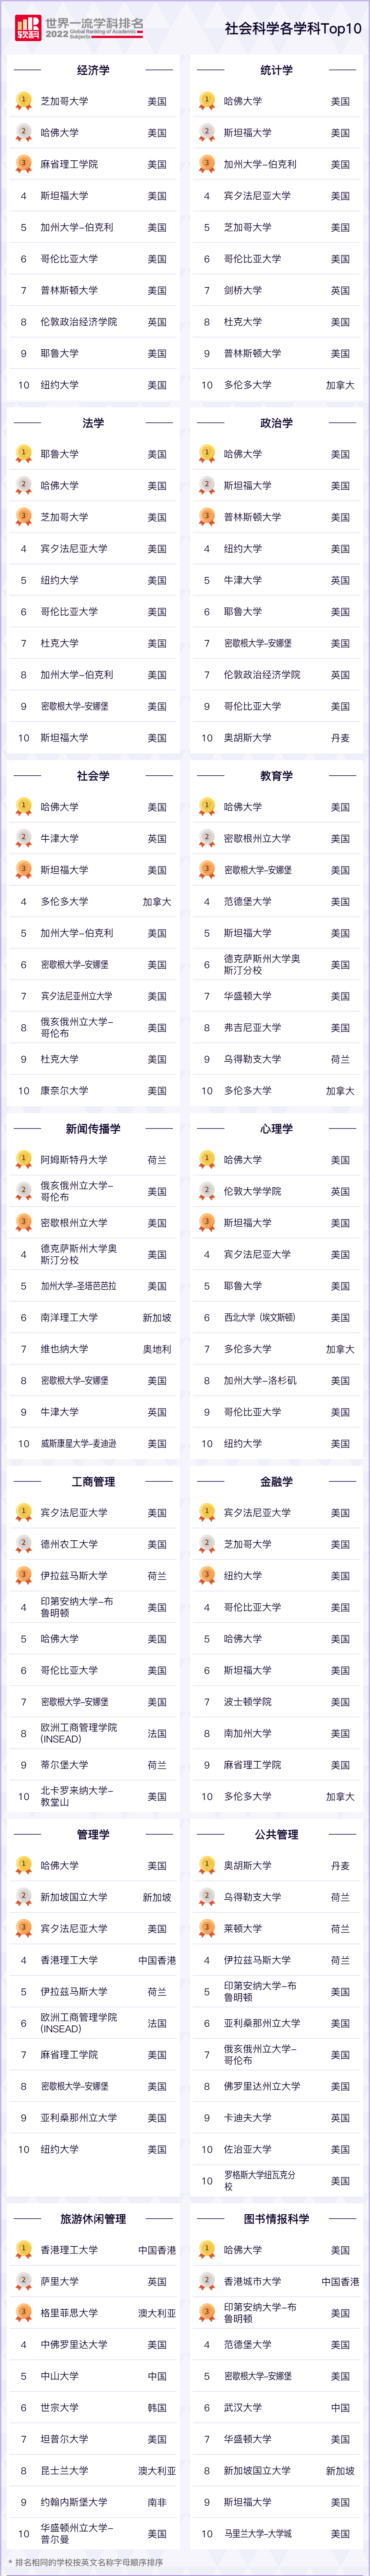 社会各学科TOP10.jpg